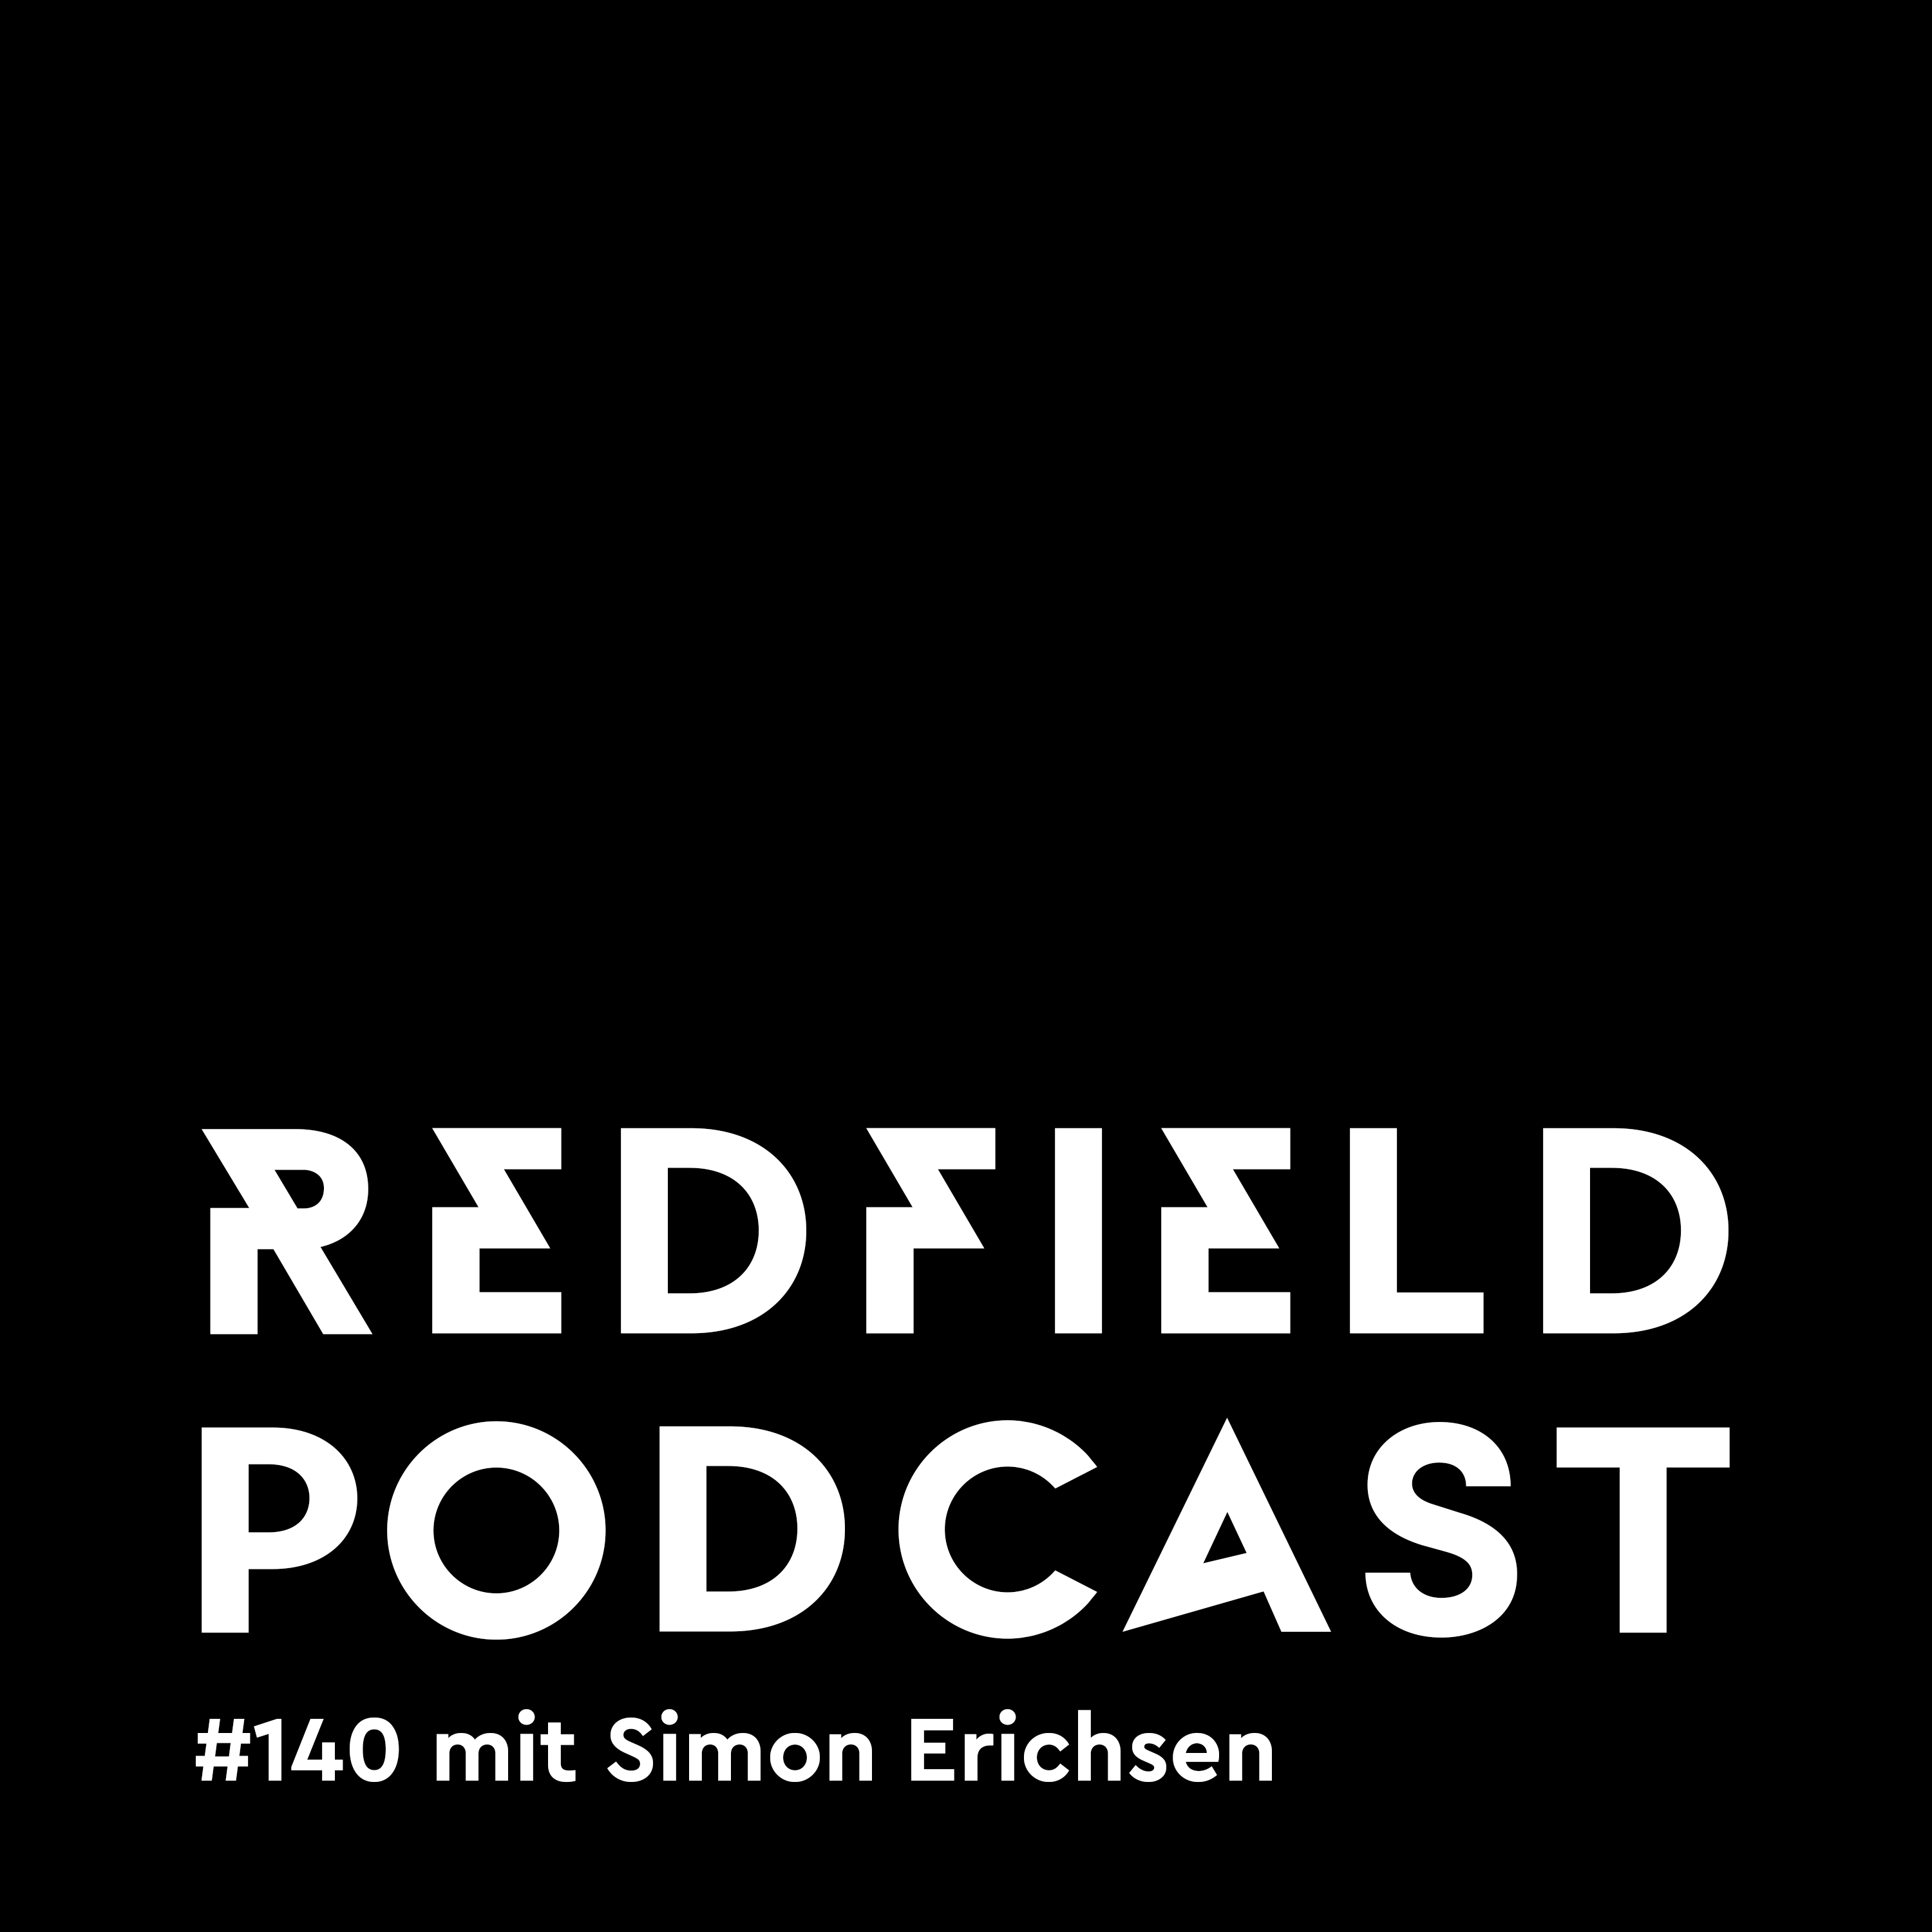 R#140 mit Simon Erichsen von Mr. Hurley & Die Pulveraffen